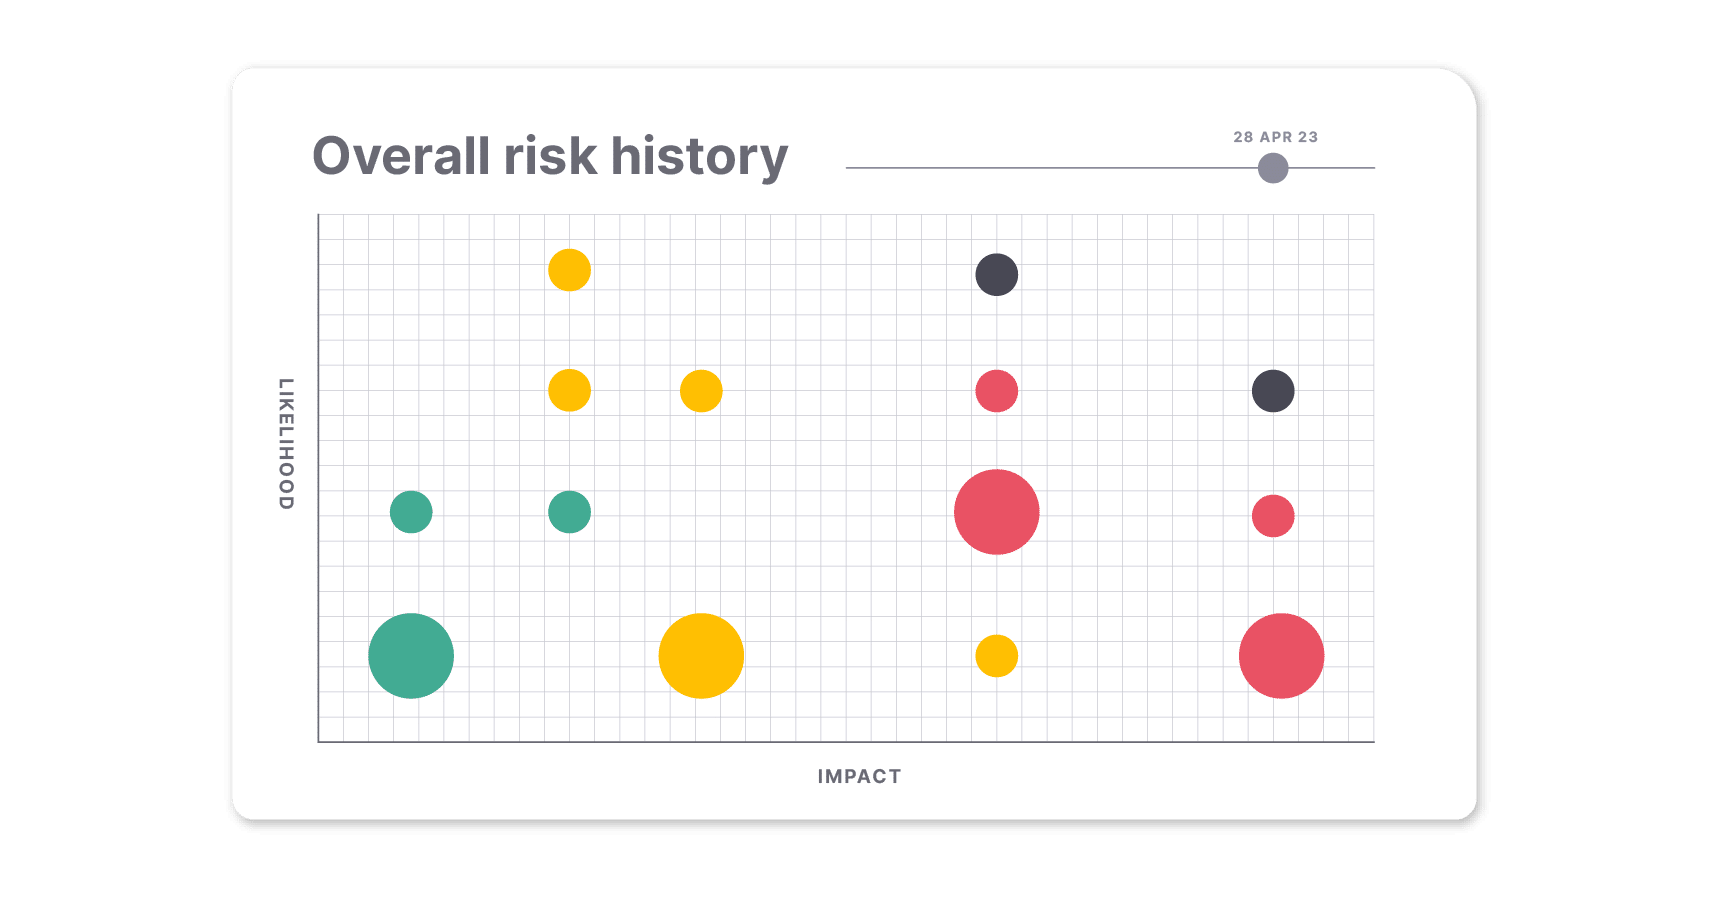 Suivez l'évolution de vos risques au fil du temps grâce au graphique de l'historique global des risques.